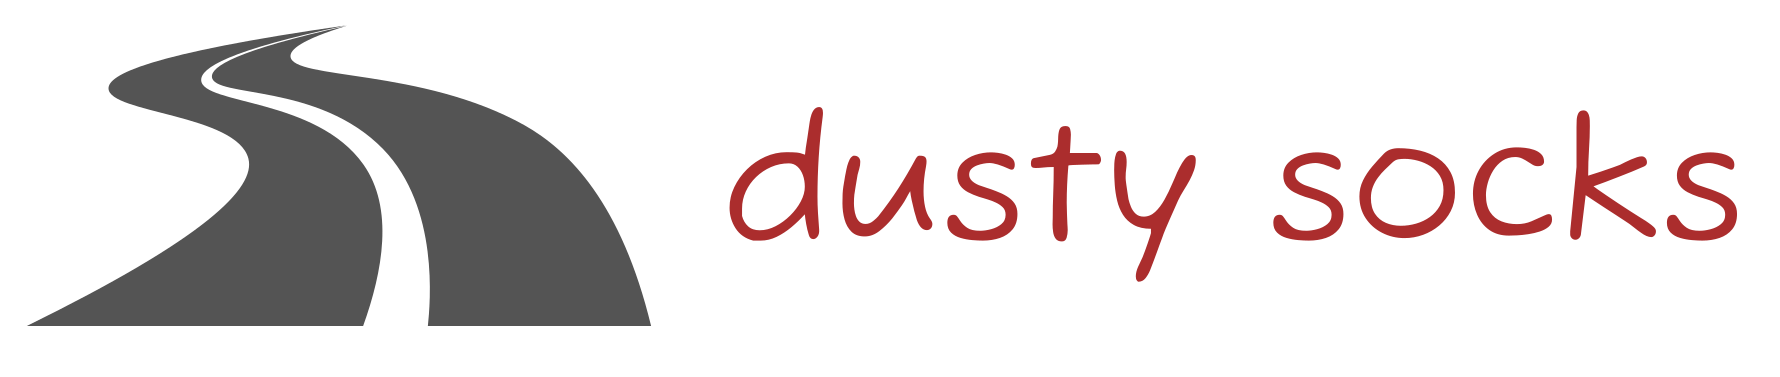 DustySocks motorbike travel journal